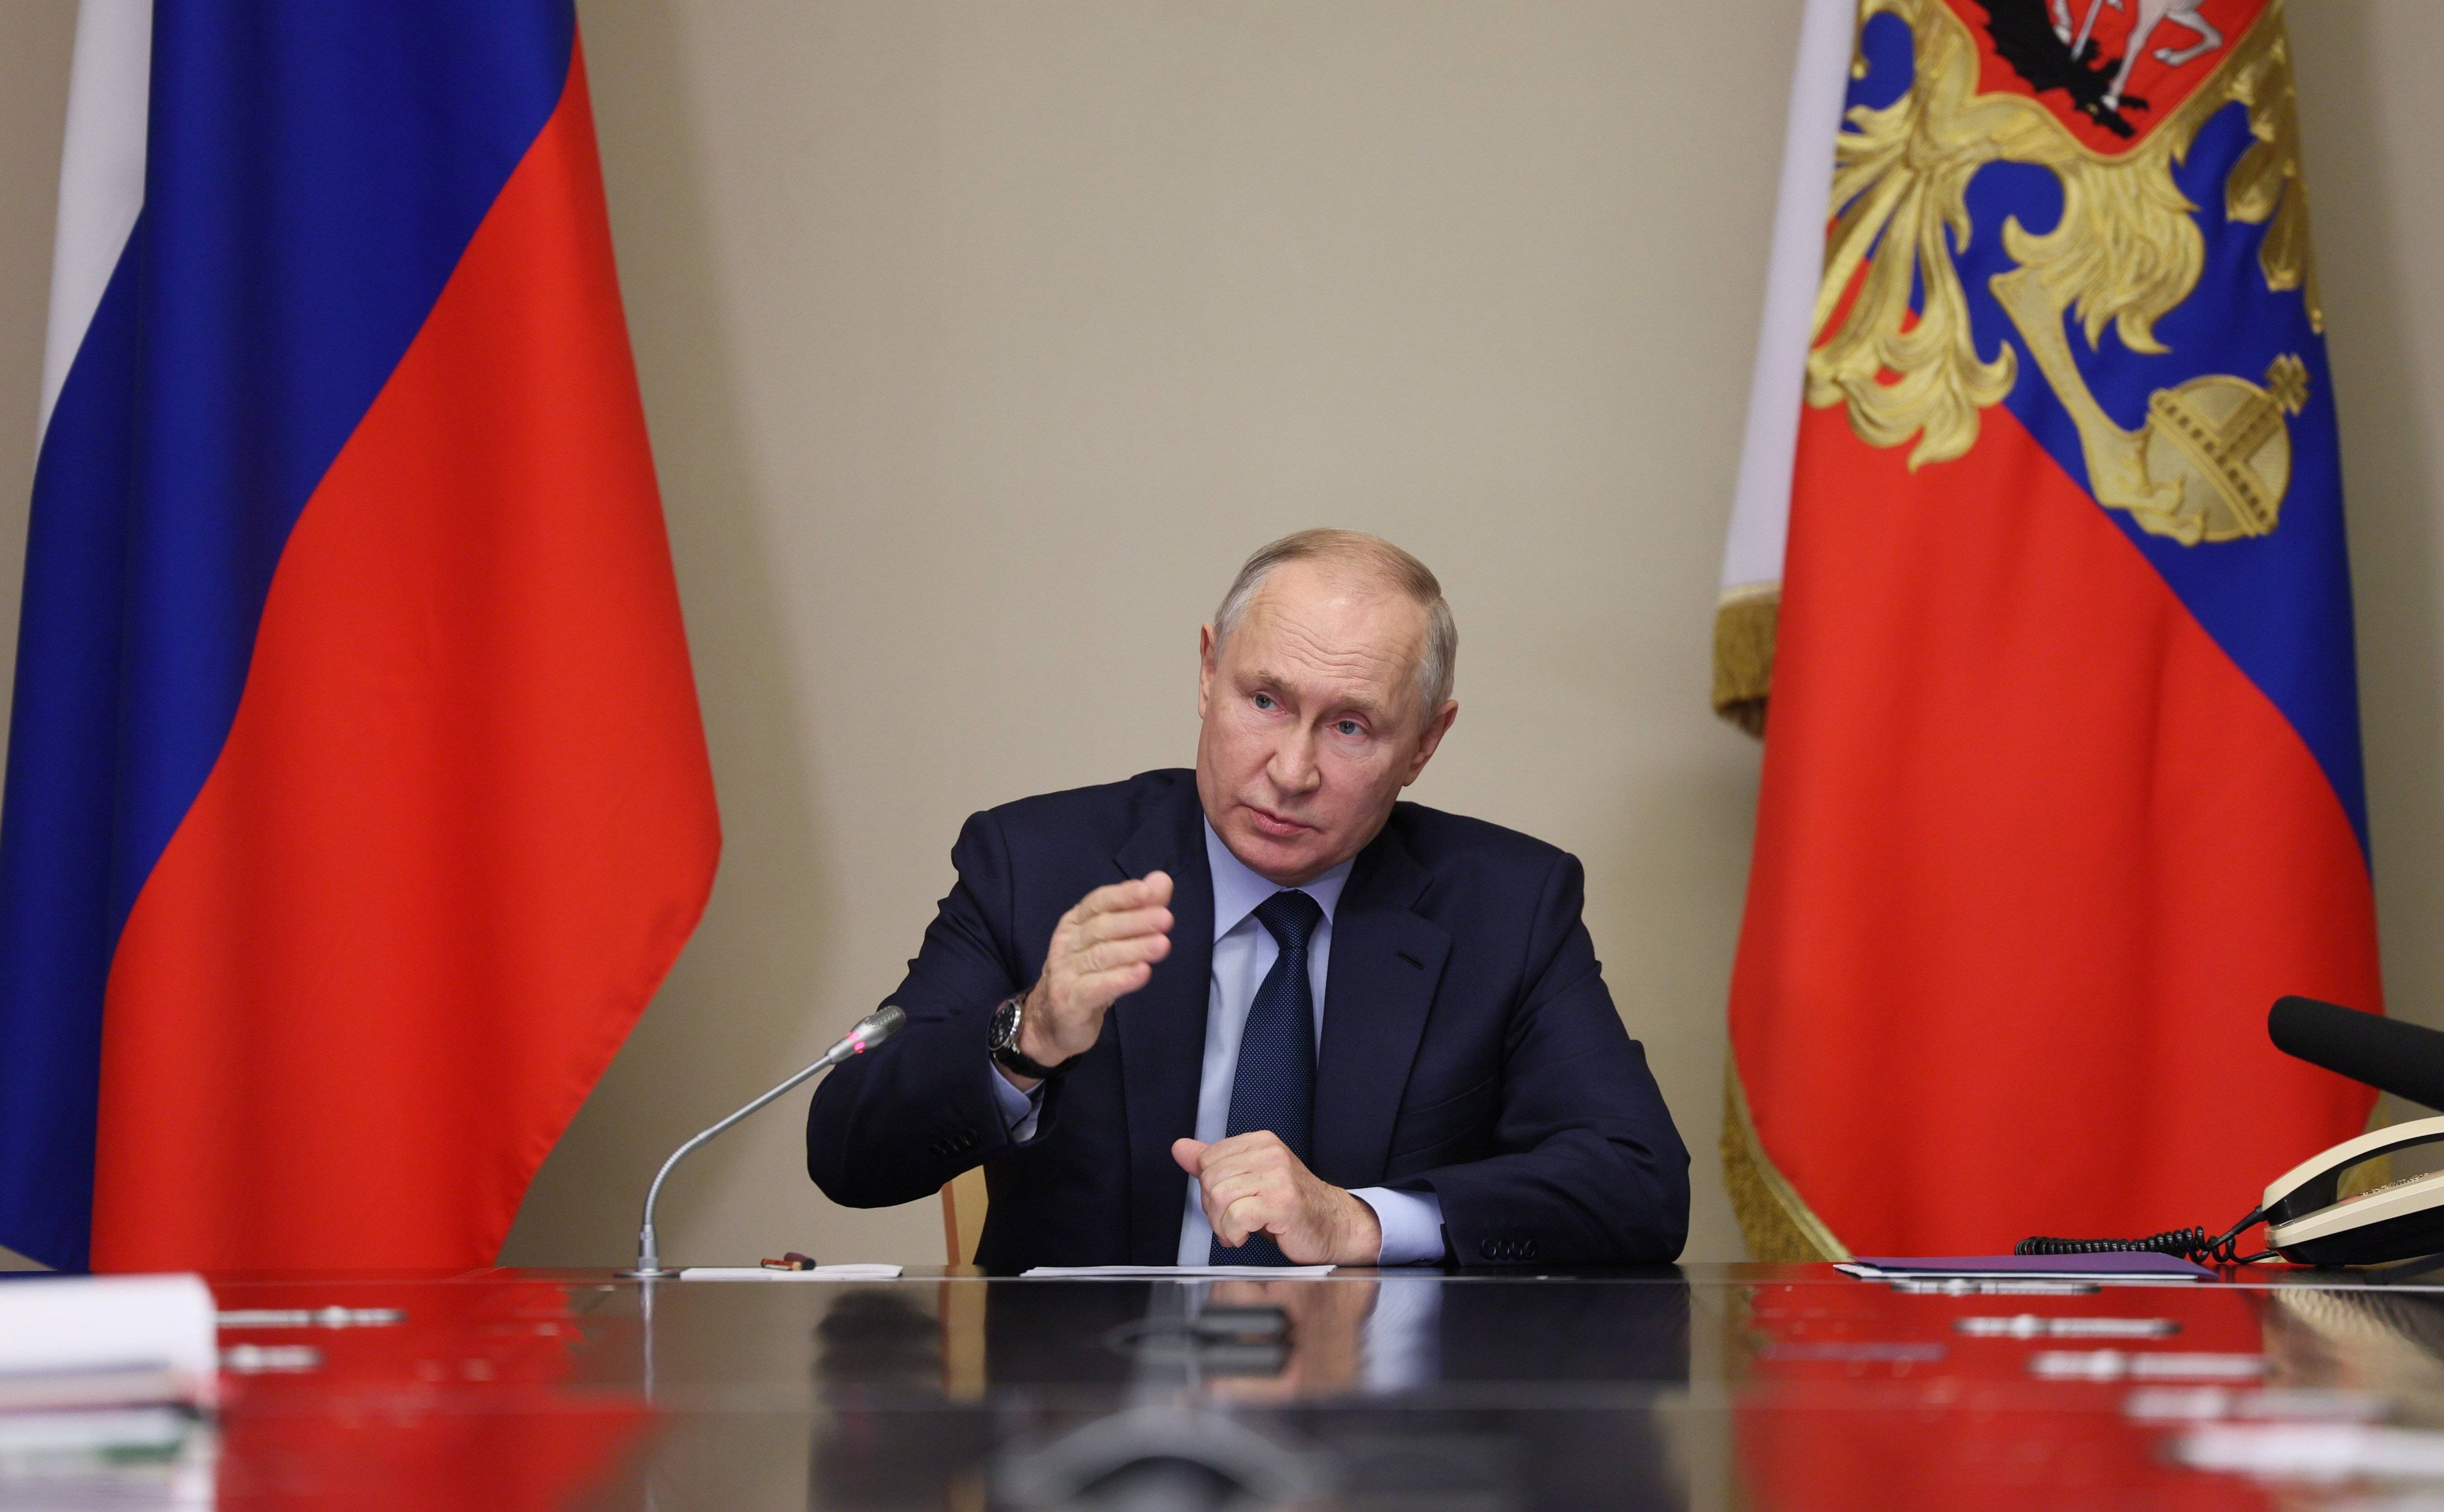 Putin afirma que "cal pensar en com aturar la guerra a Ucraïna" davant els líders del G20